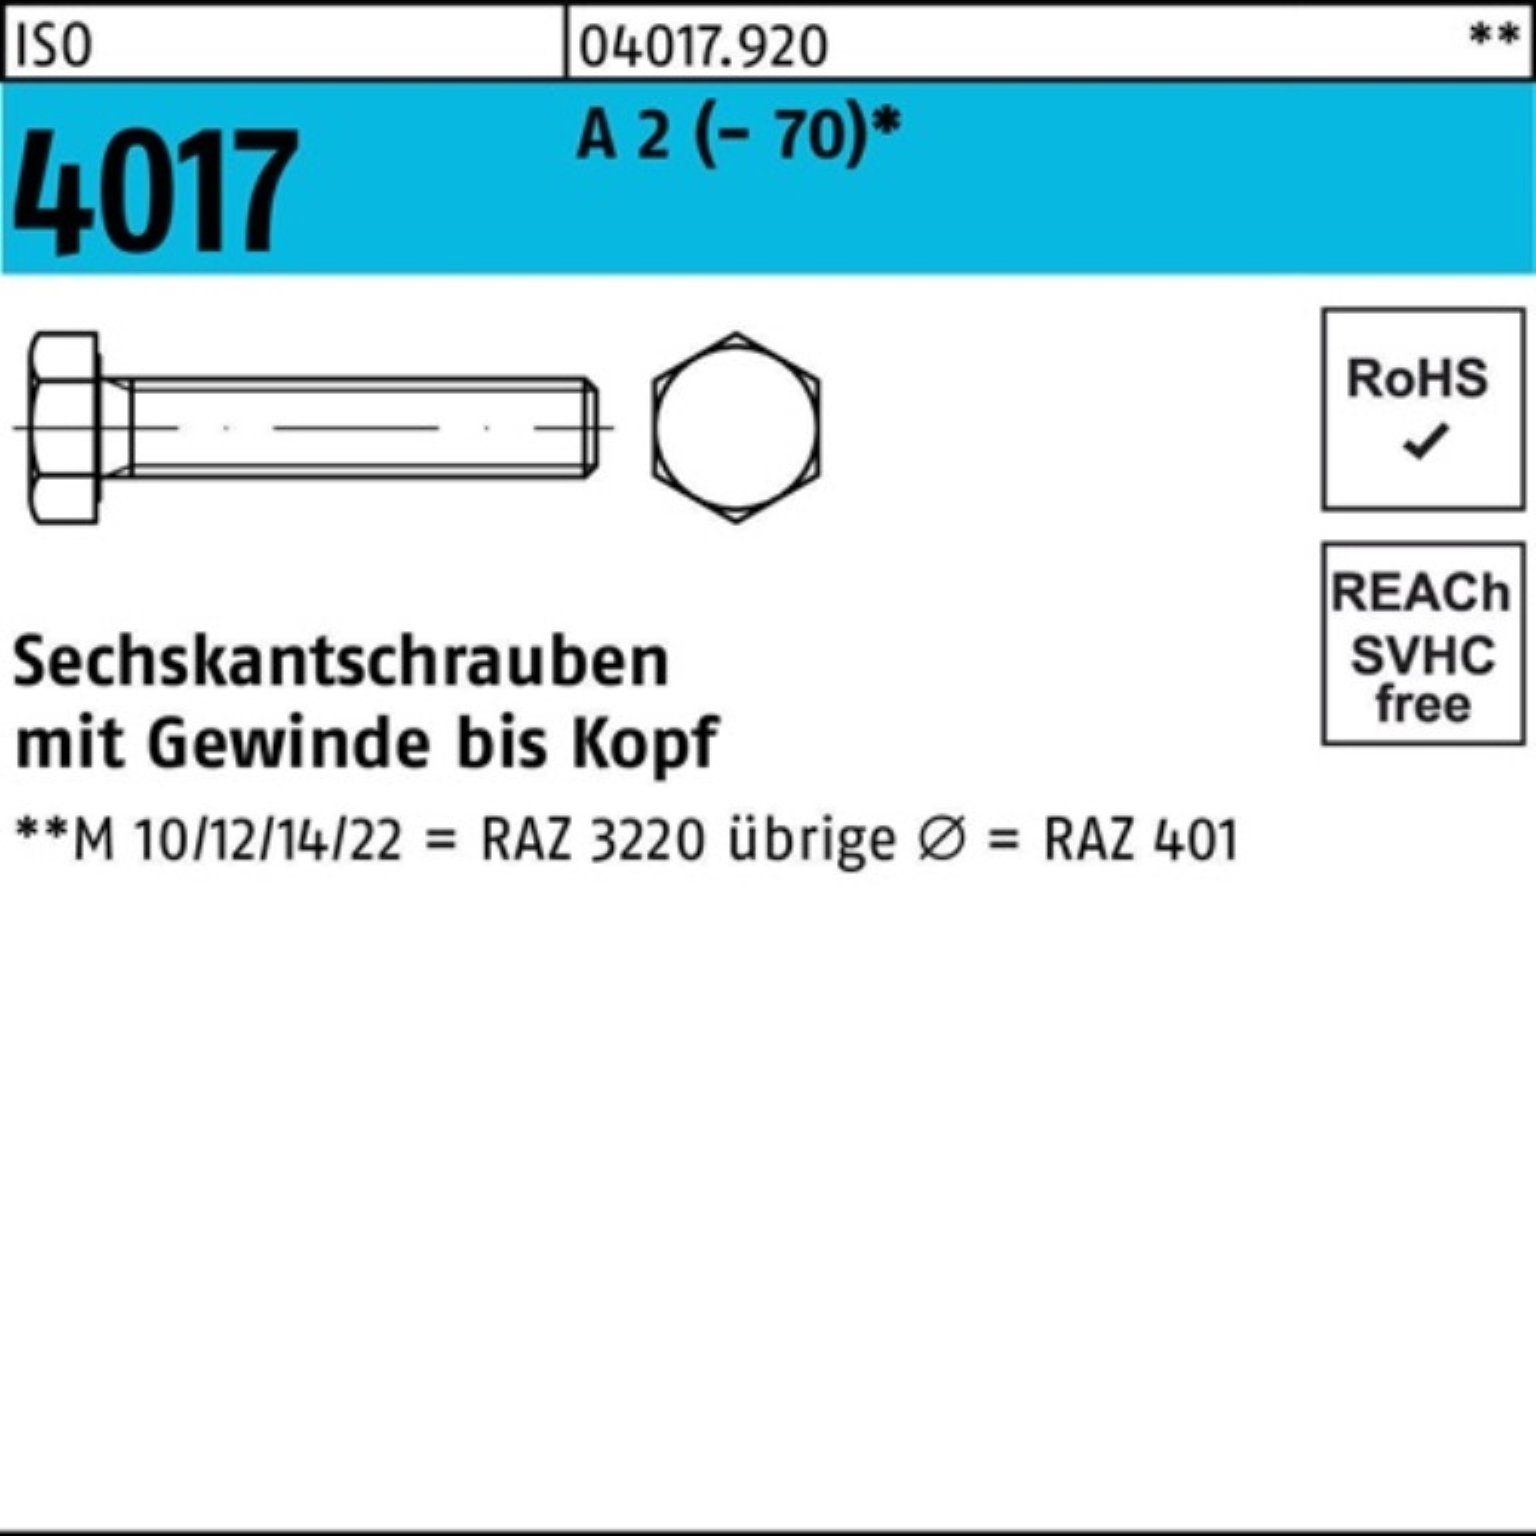 Bufab Sechskantschraube 100er 30 2 Stück Sechskantschraube A 4017 VG Pack (70) 50 M14x ISO